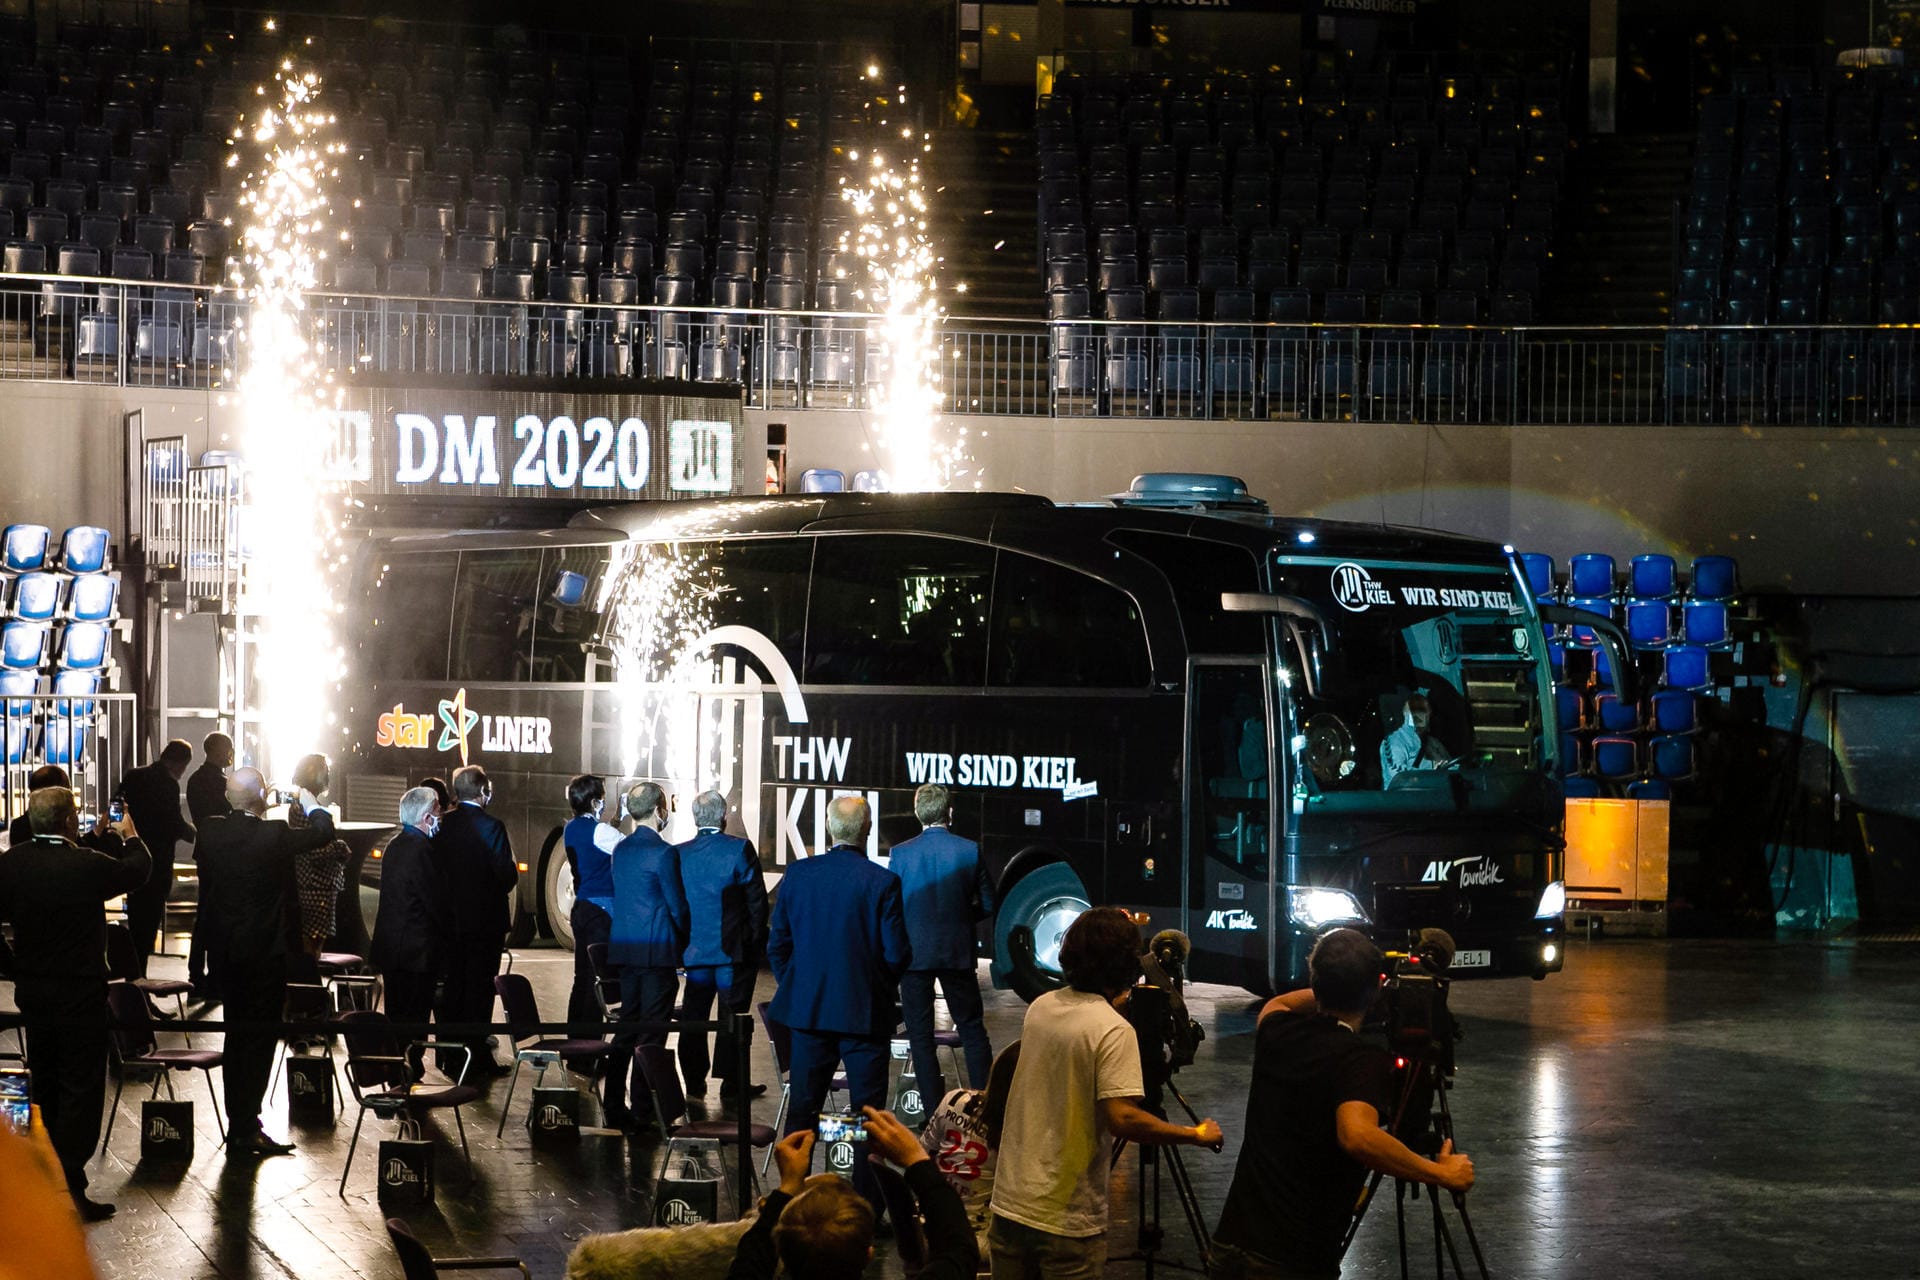 Der Mannschaftsbus des THW Kiel fährt in die Kieler Sparkassen-Arena: Lichtshow ist da, doch wegen der Corona-Pandemie fehlt das Publikum.